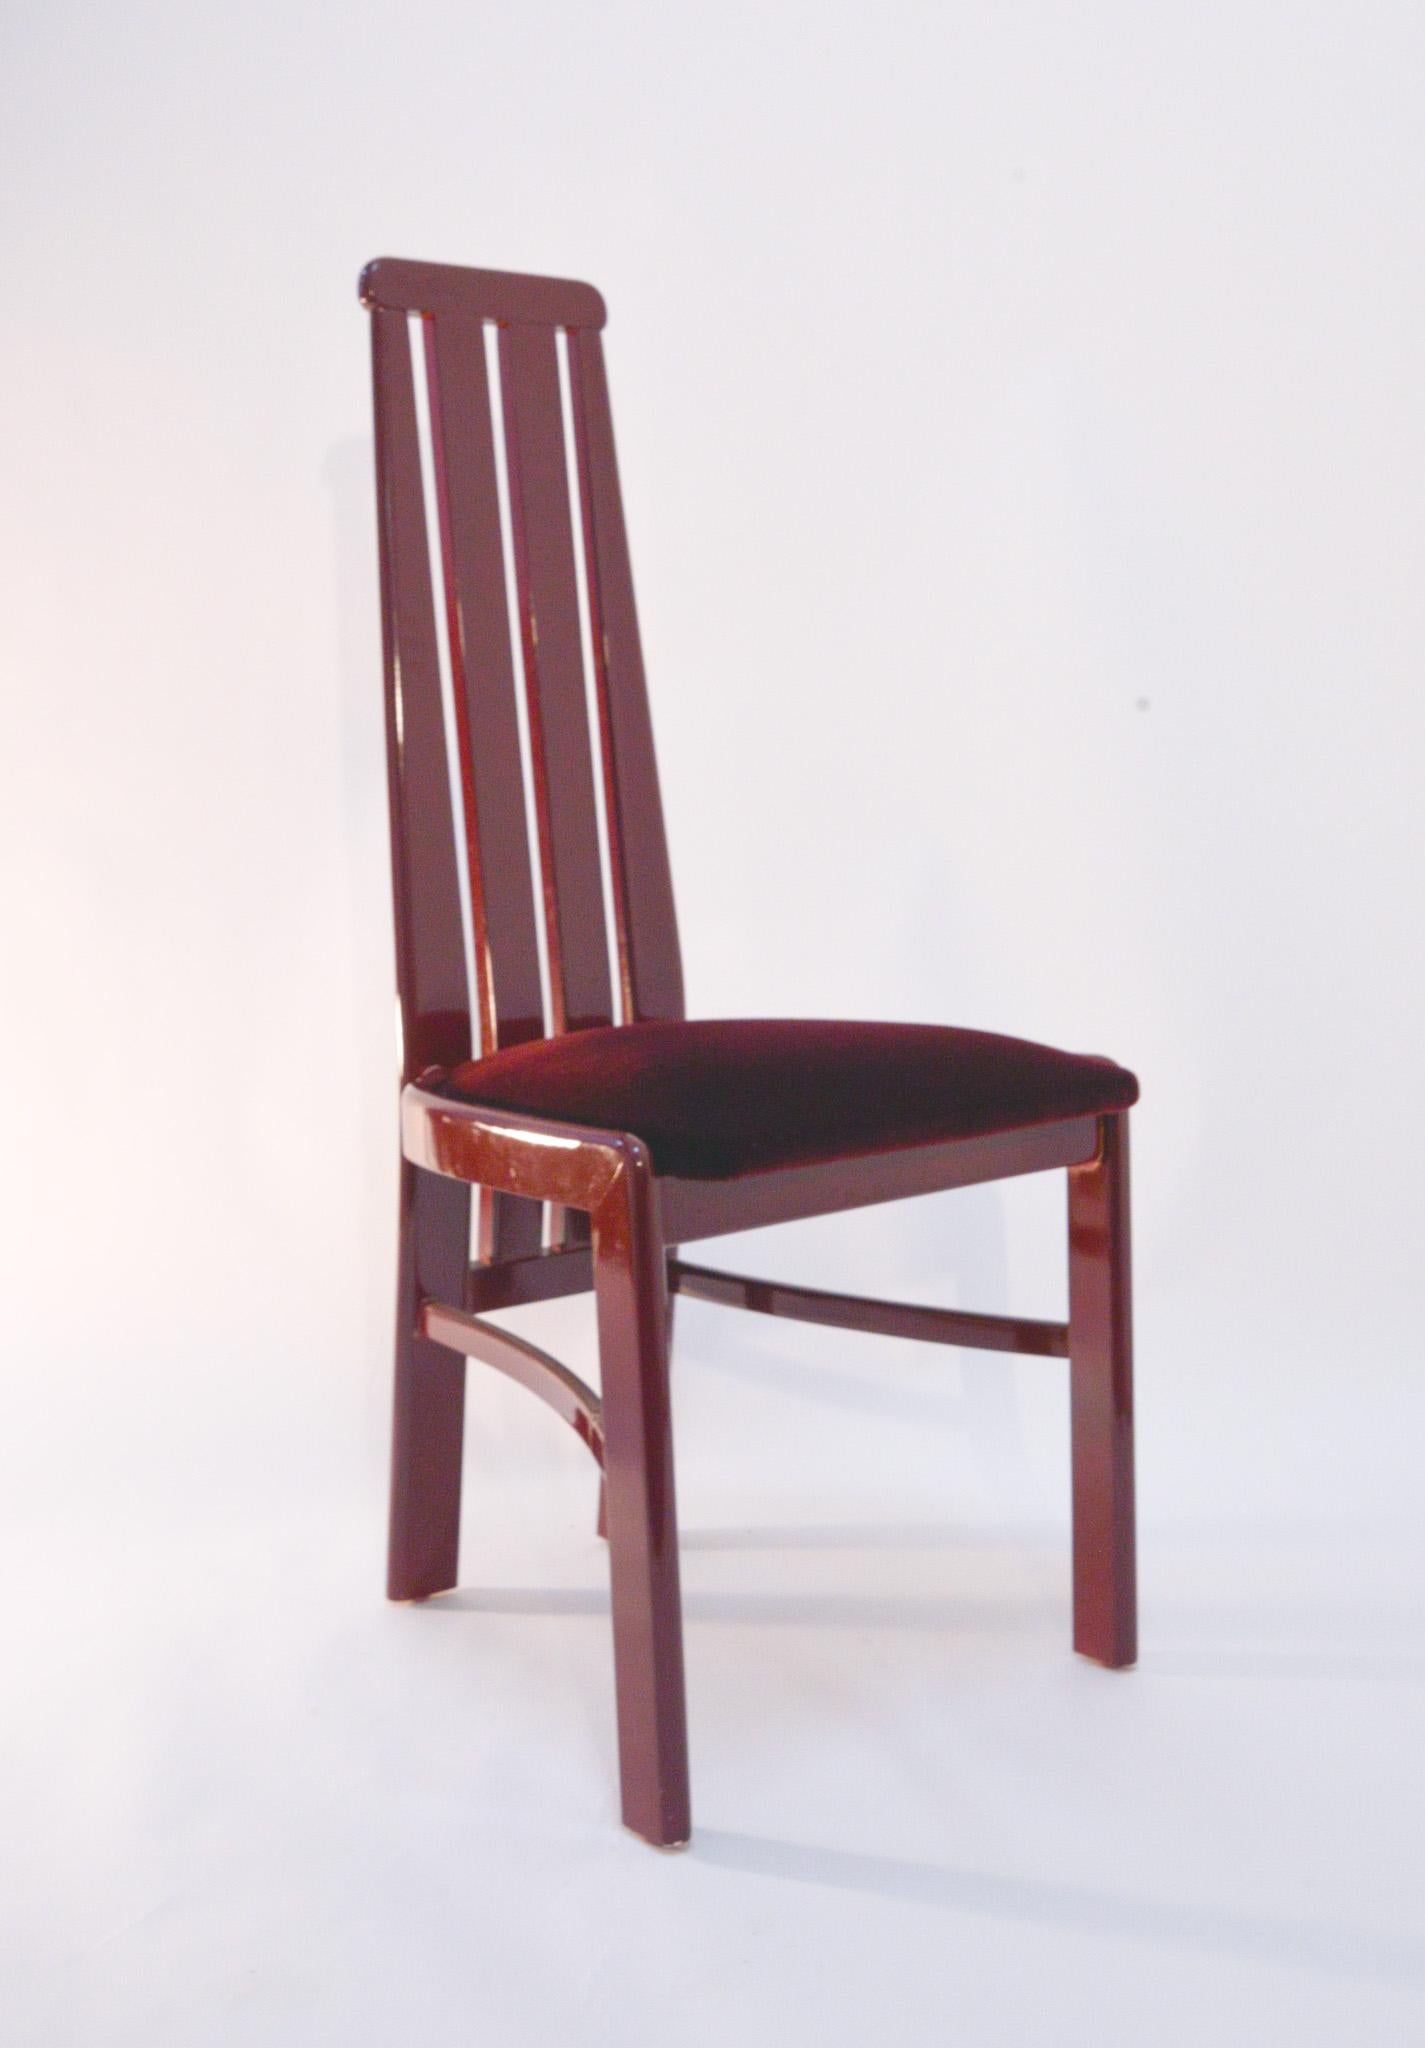 Dieses Set aus Pietro Costantini Midcentury Italian Modern Dining Chairs ist ein optischer Leckerbissen. Das tief burgunderfarbene Mohair und das hochglänzende burgunderfarbene Finish sind eine raffinierte Interpretation der Silhouette der 80er